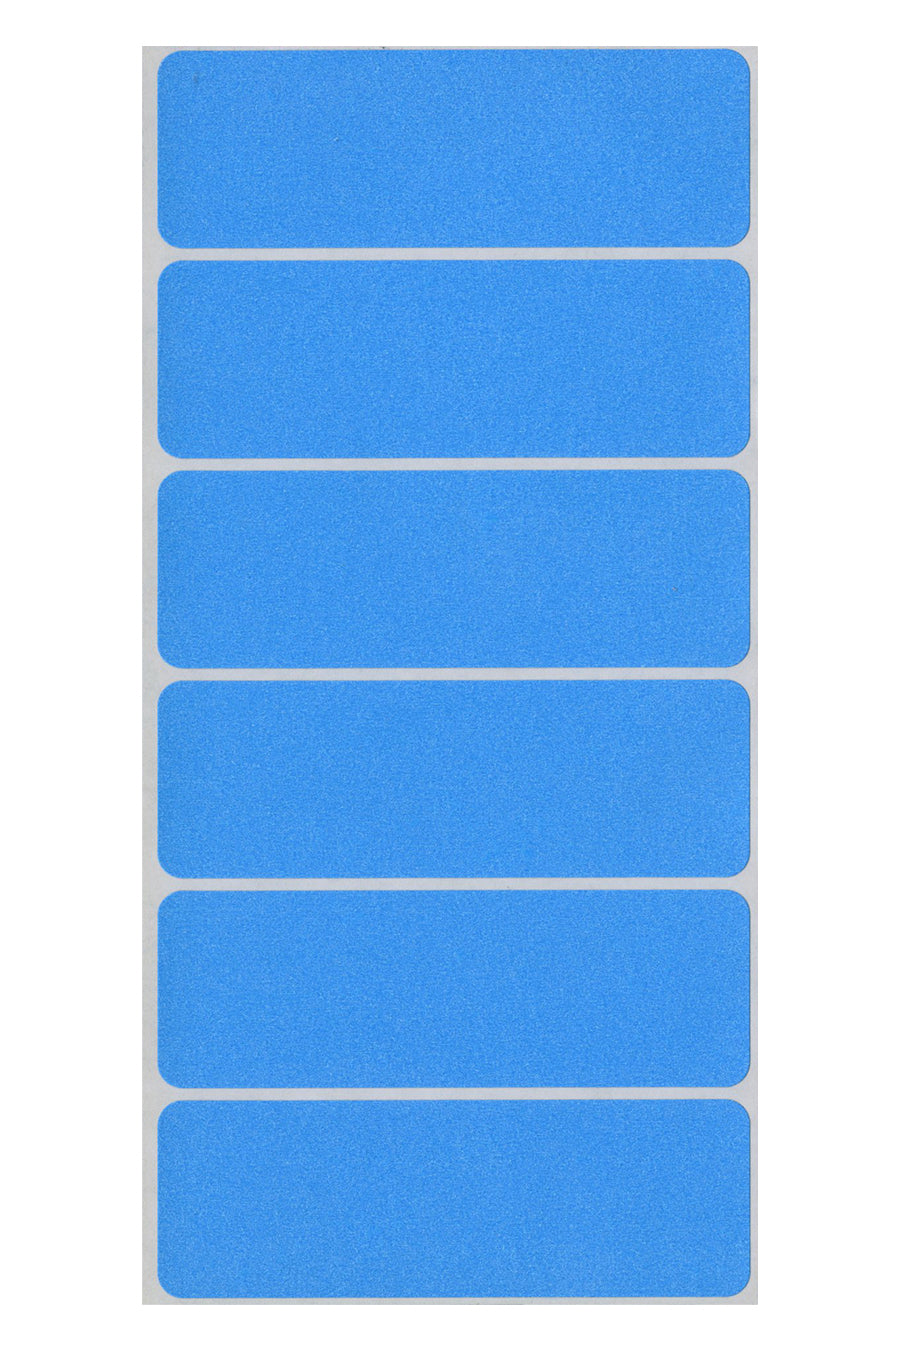 1" x 3" Color Coding Labels, Light Blue, 200/Bx